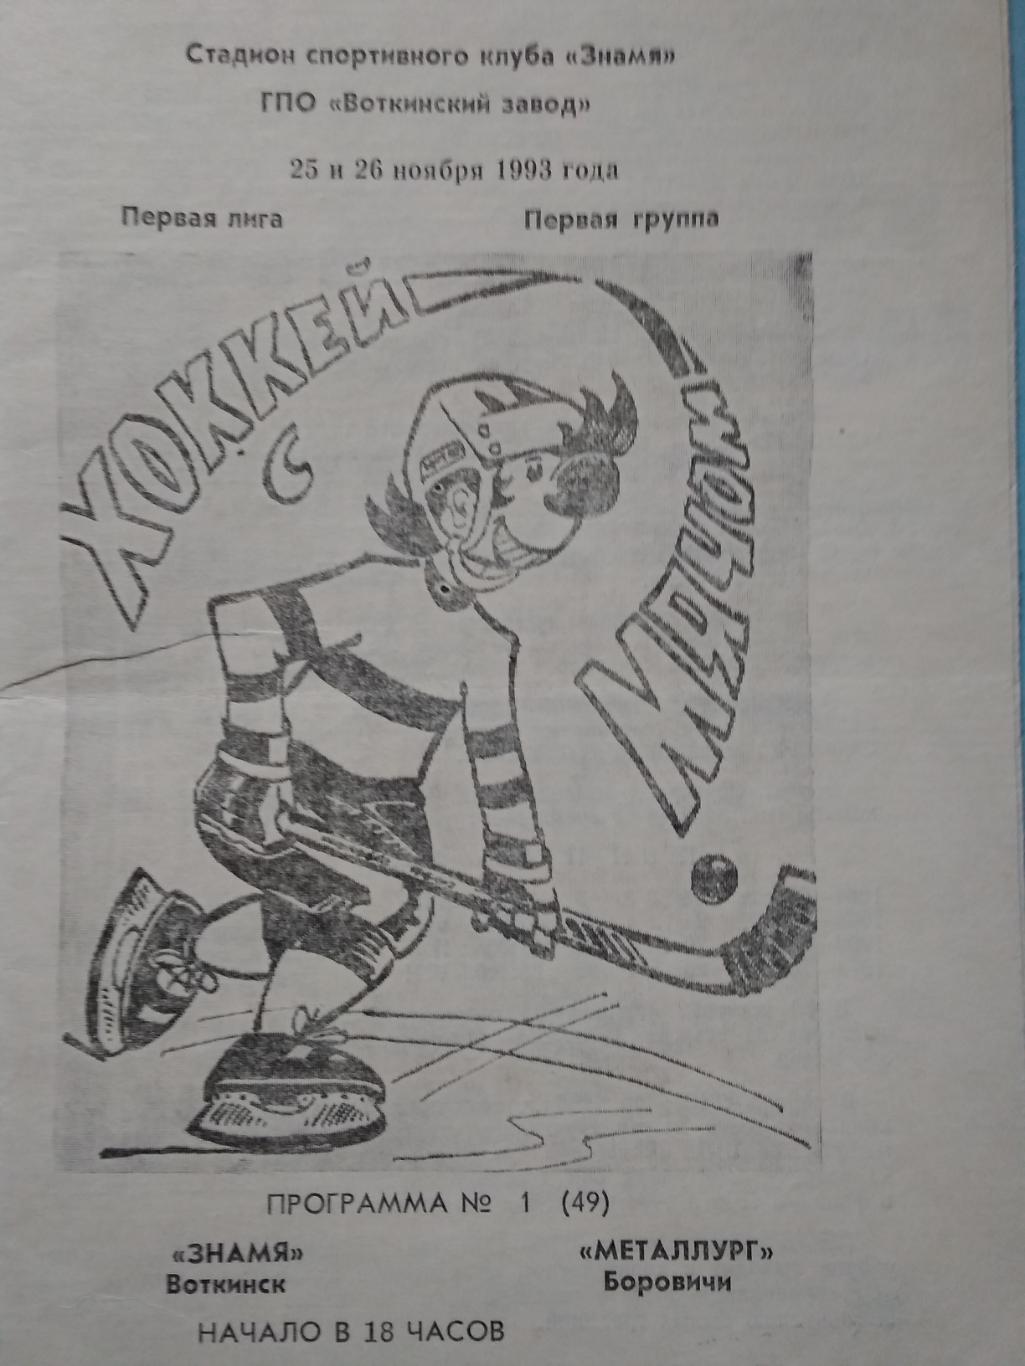 Знамя (Воткинск) - Металлург (Боровичи). 25-26 ноября 1993.